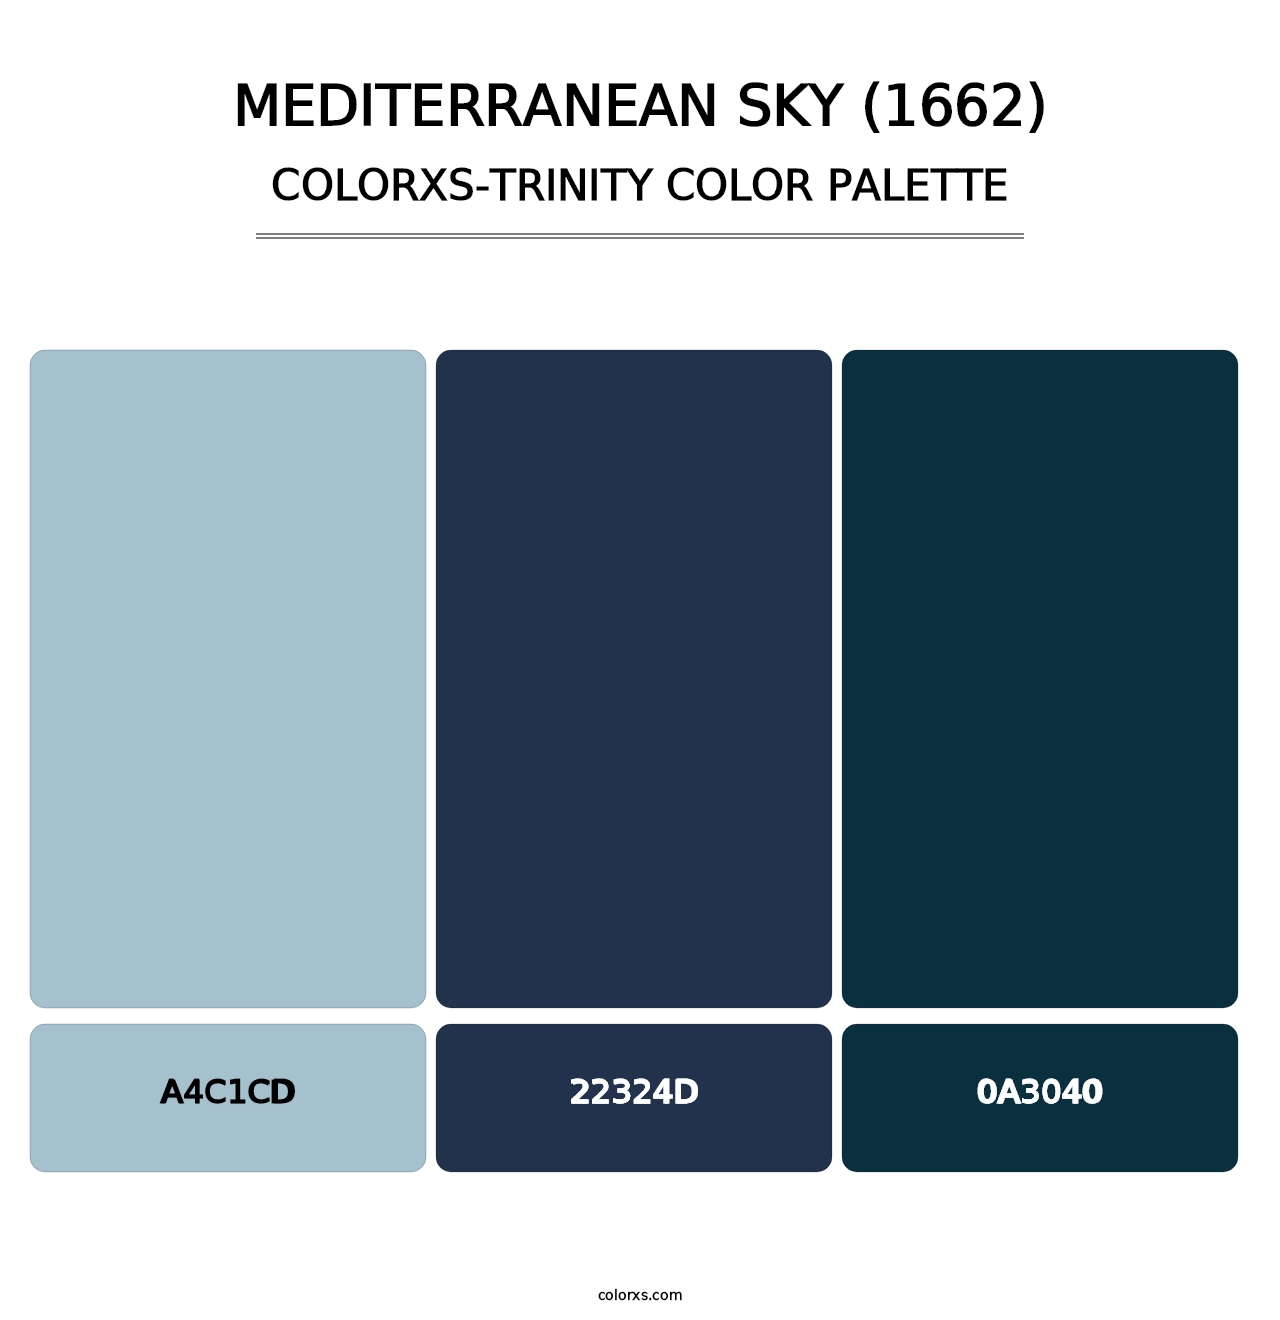 Mediterranean Sky (1662) - Colorxs Trinity Palette